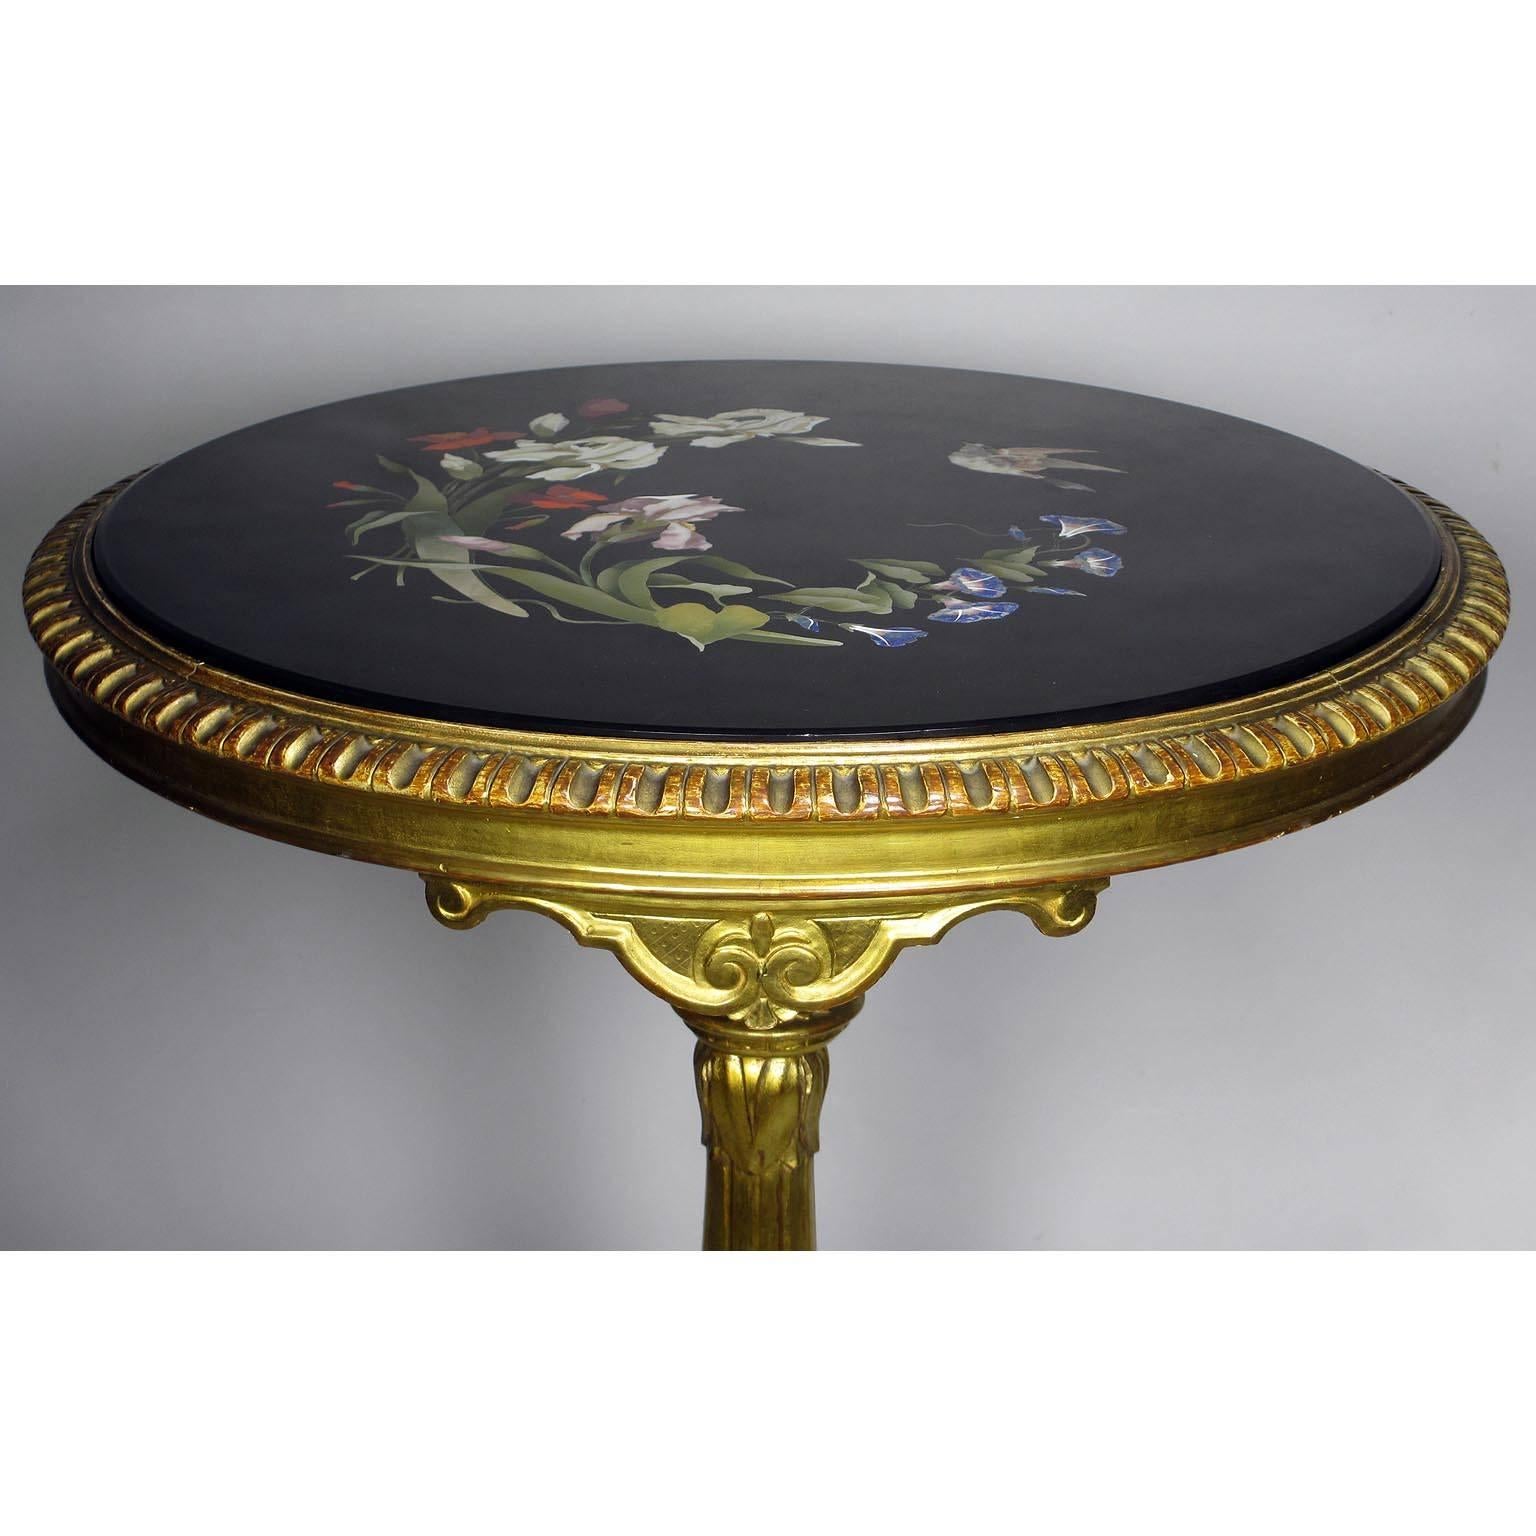 Sehr feiner italienischer Florentiner Pietra Dura-Tisch mit Intarsien aus dem 19. Jahrhundert (Rokoko)